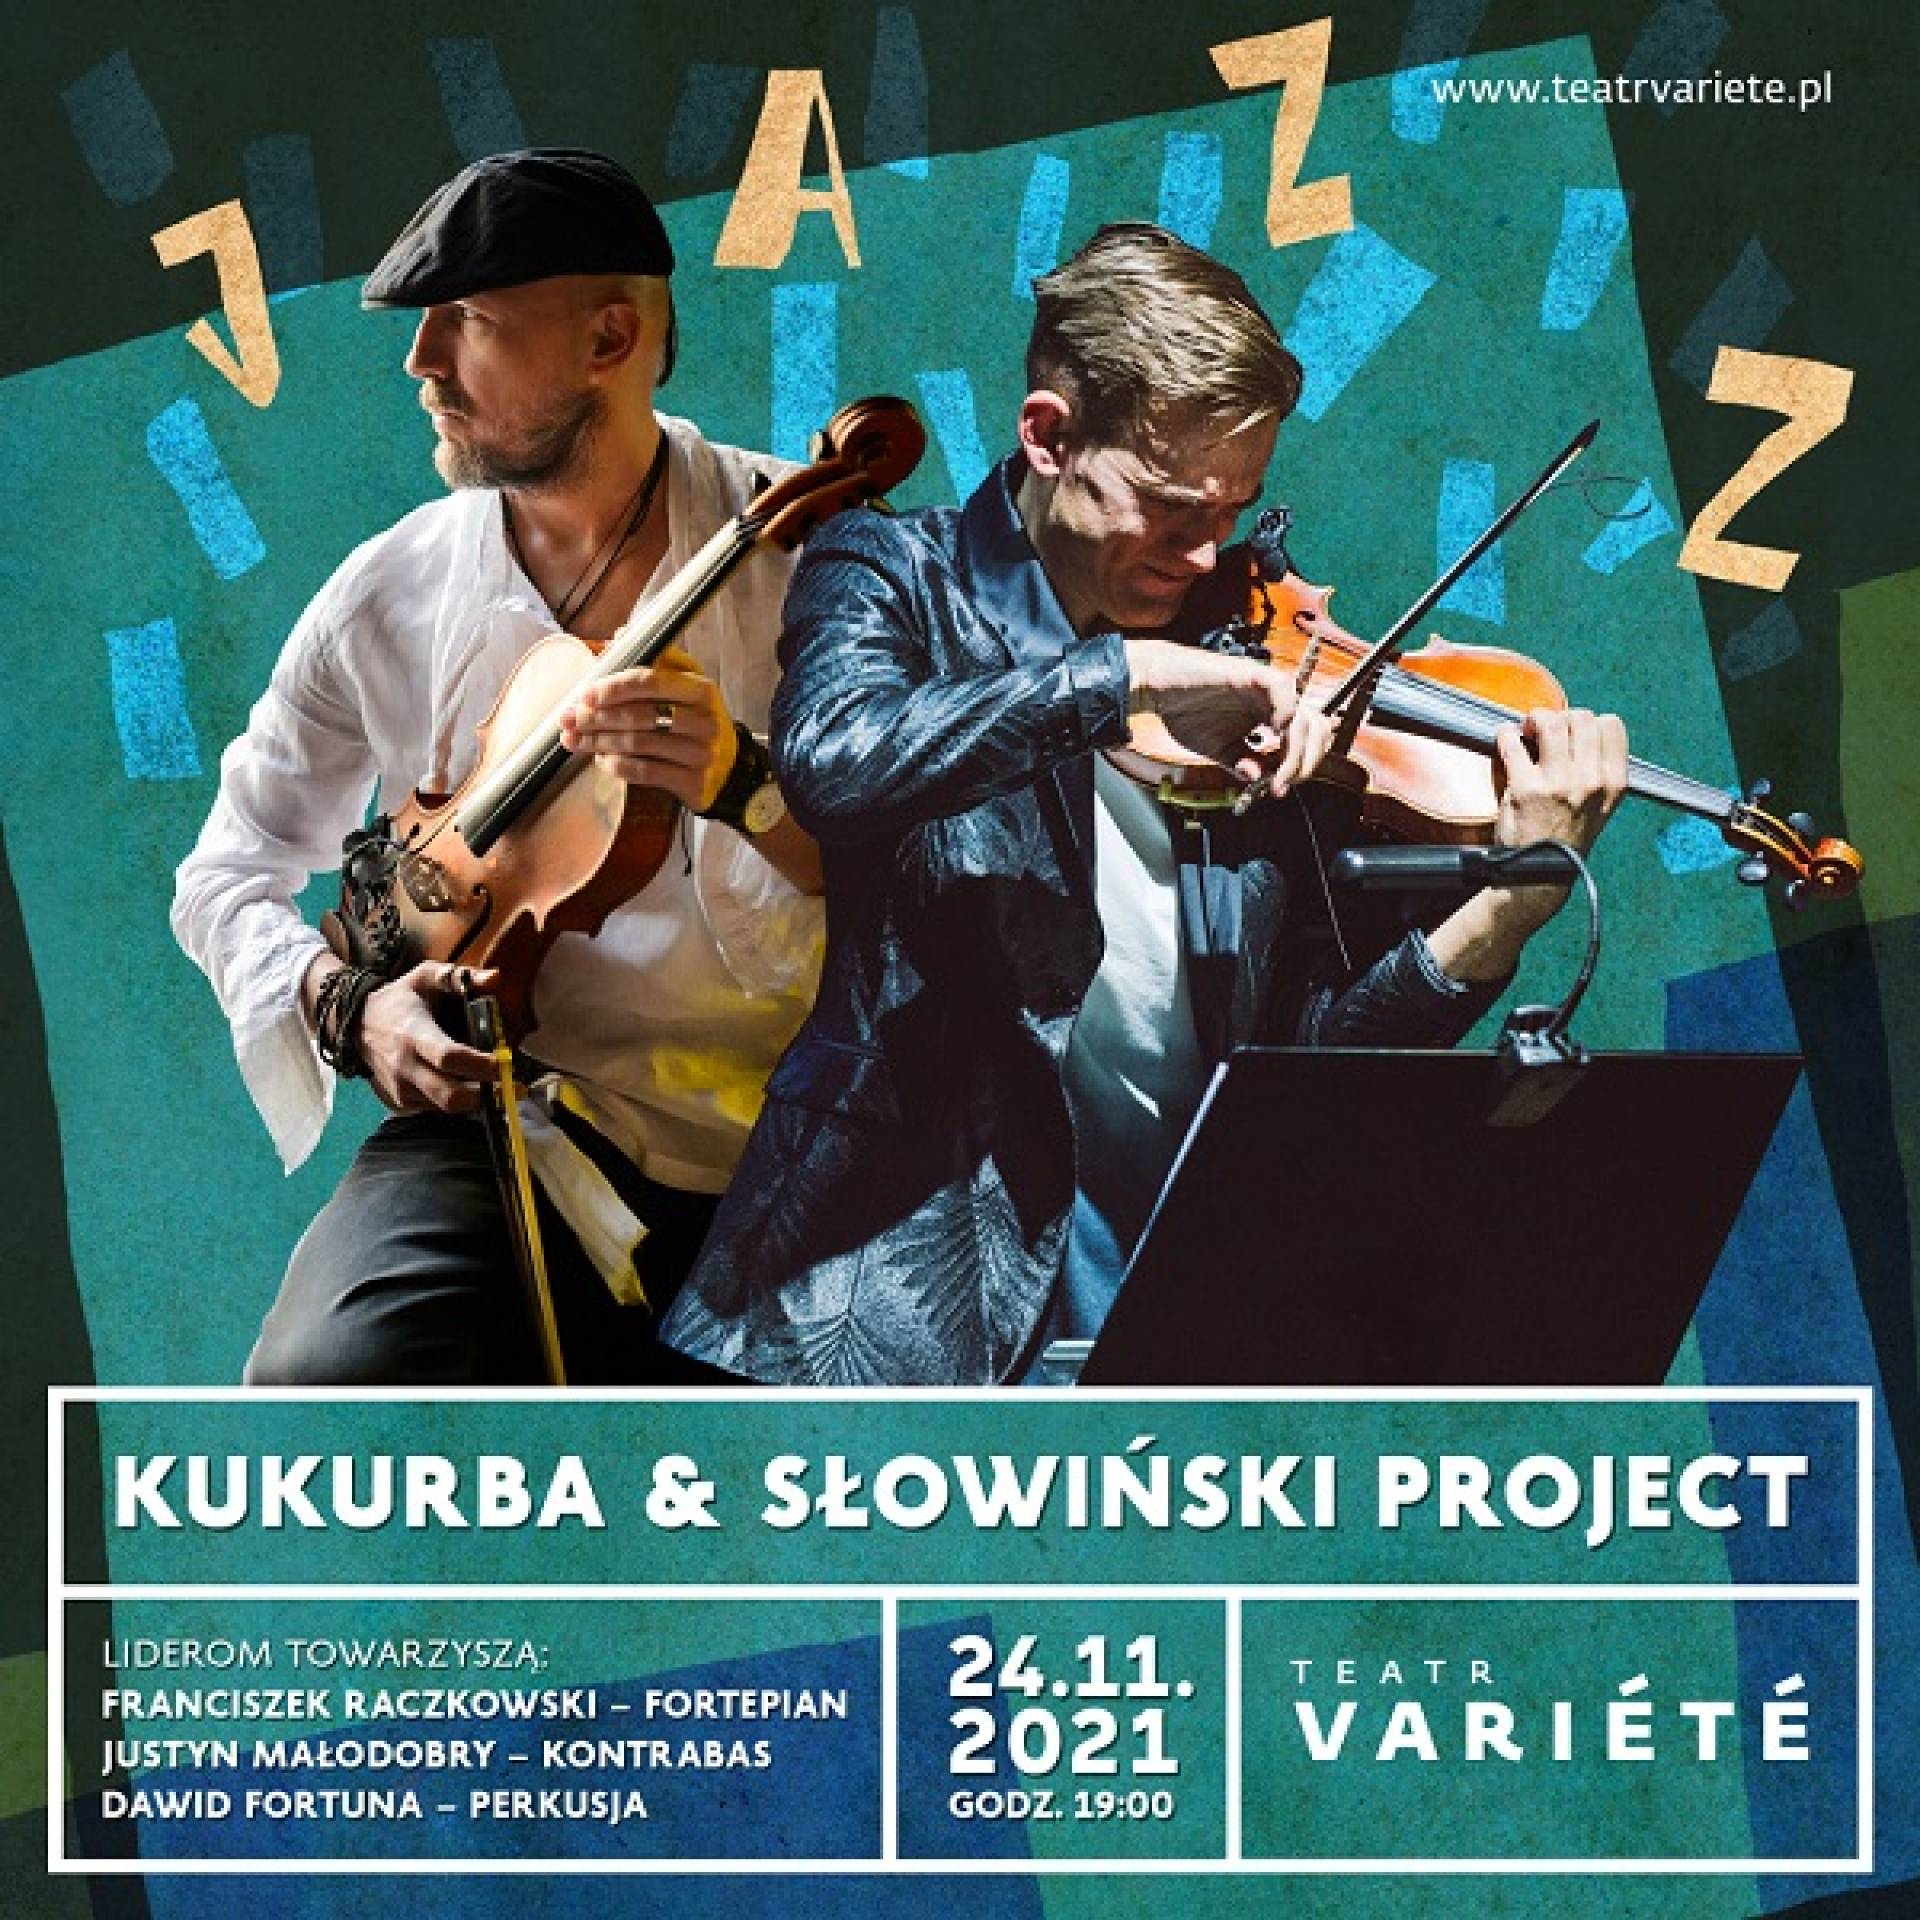 Kukurba & Słowiński Project